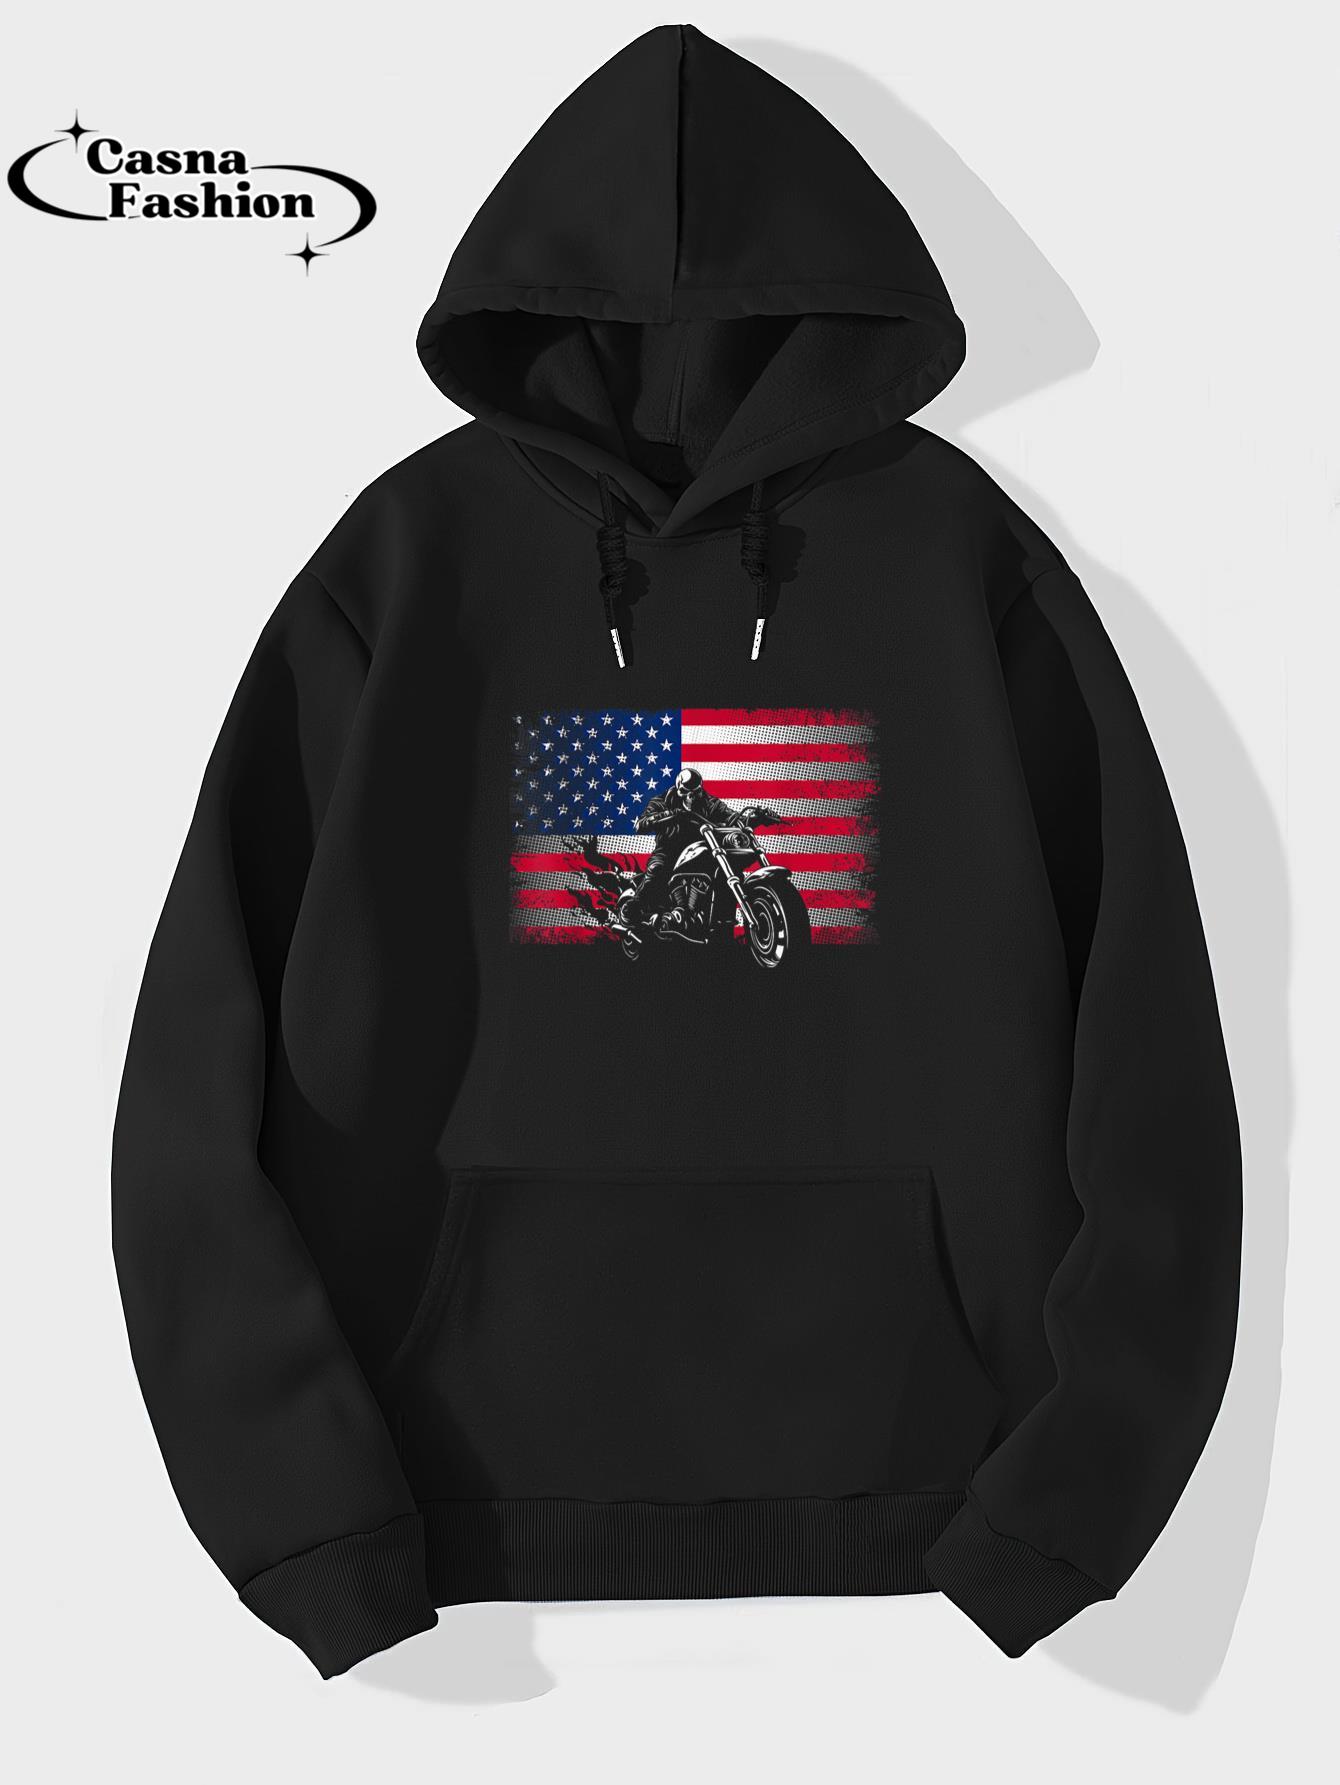 casnafashion_Hoodie_American Flag Biker Motorcycle T-Shirt_hoodie_black hoodie